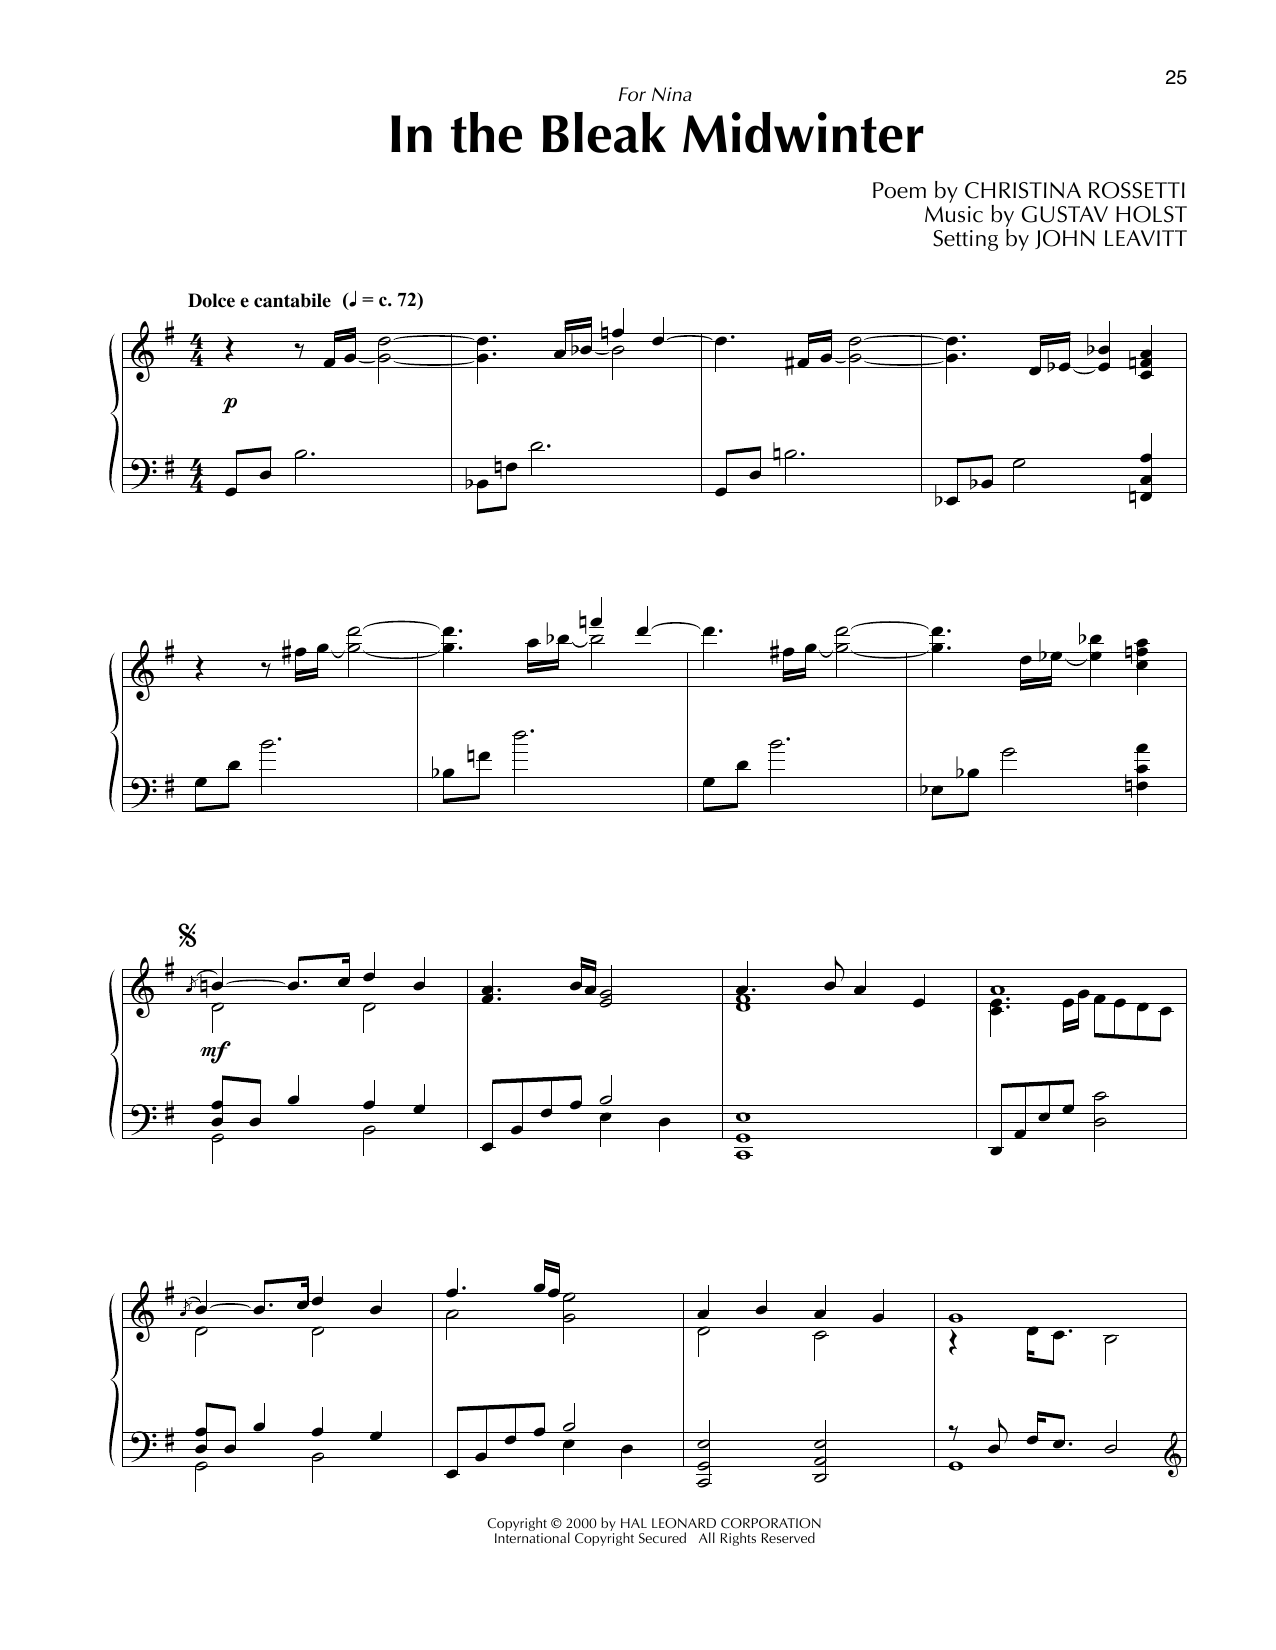 Gustav Holst In The Bleak Midwinter (arr. John Leavitt) Sheet Music Notes & Chords for SATB Choir - Download or Print PDF